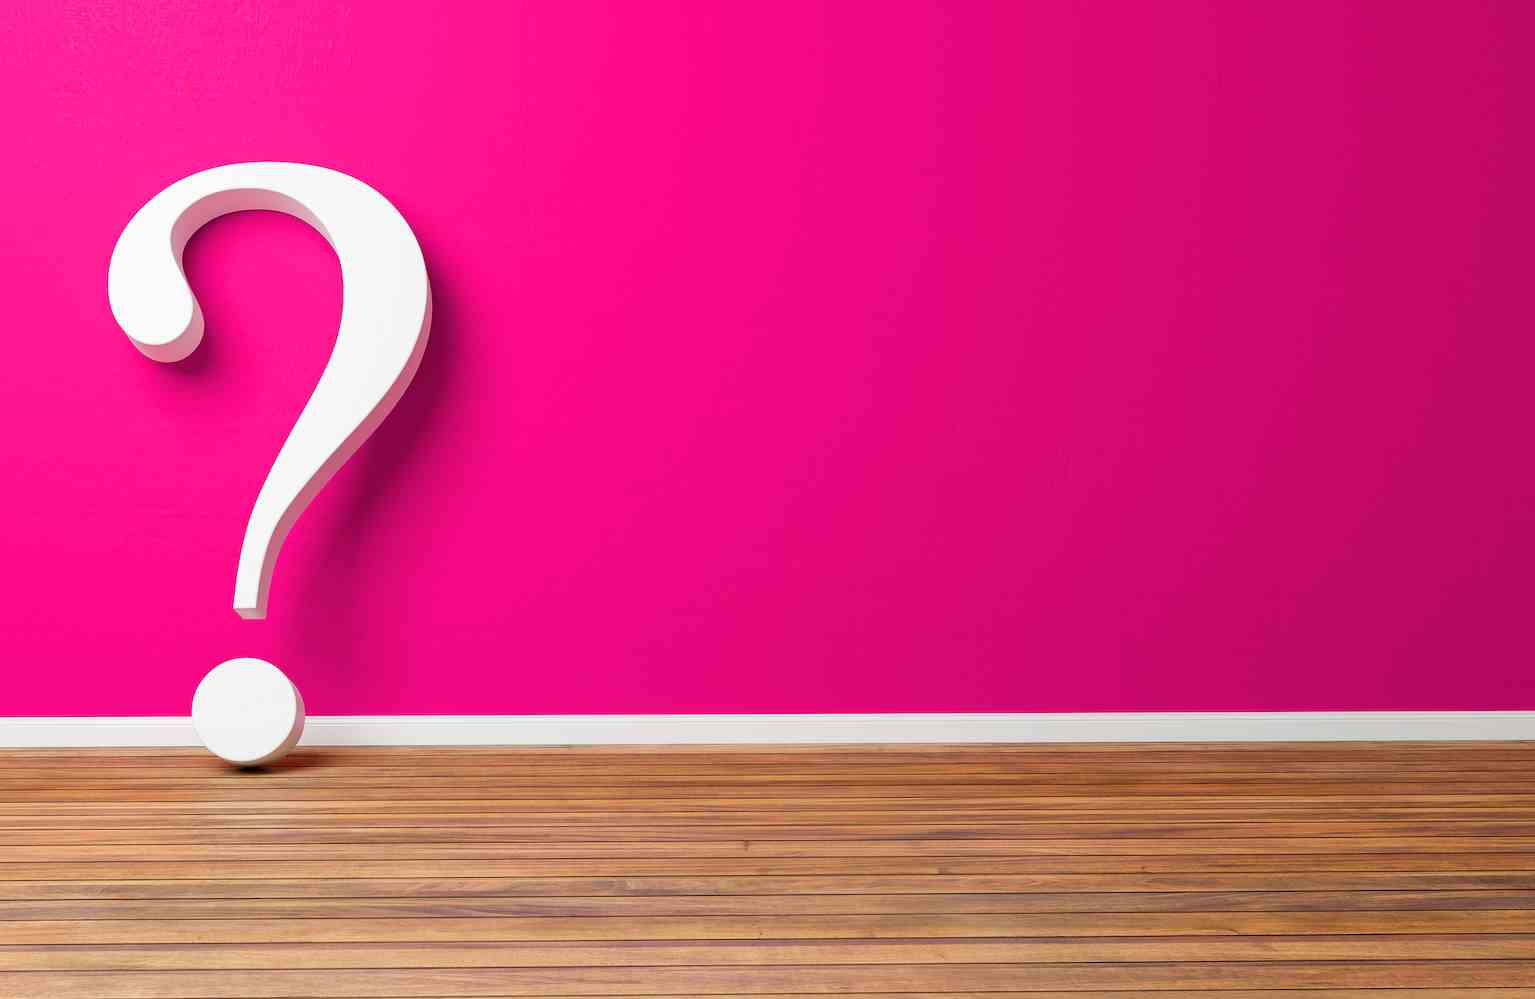 Weißes Fragezeichen an rosa Betonwand - 3D-Illustration